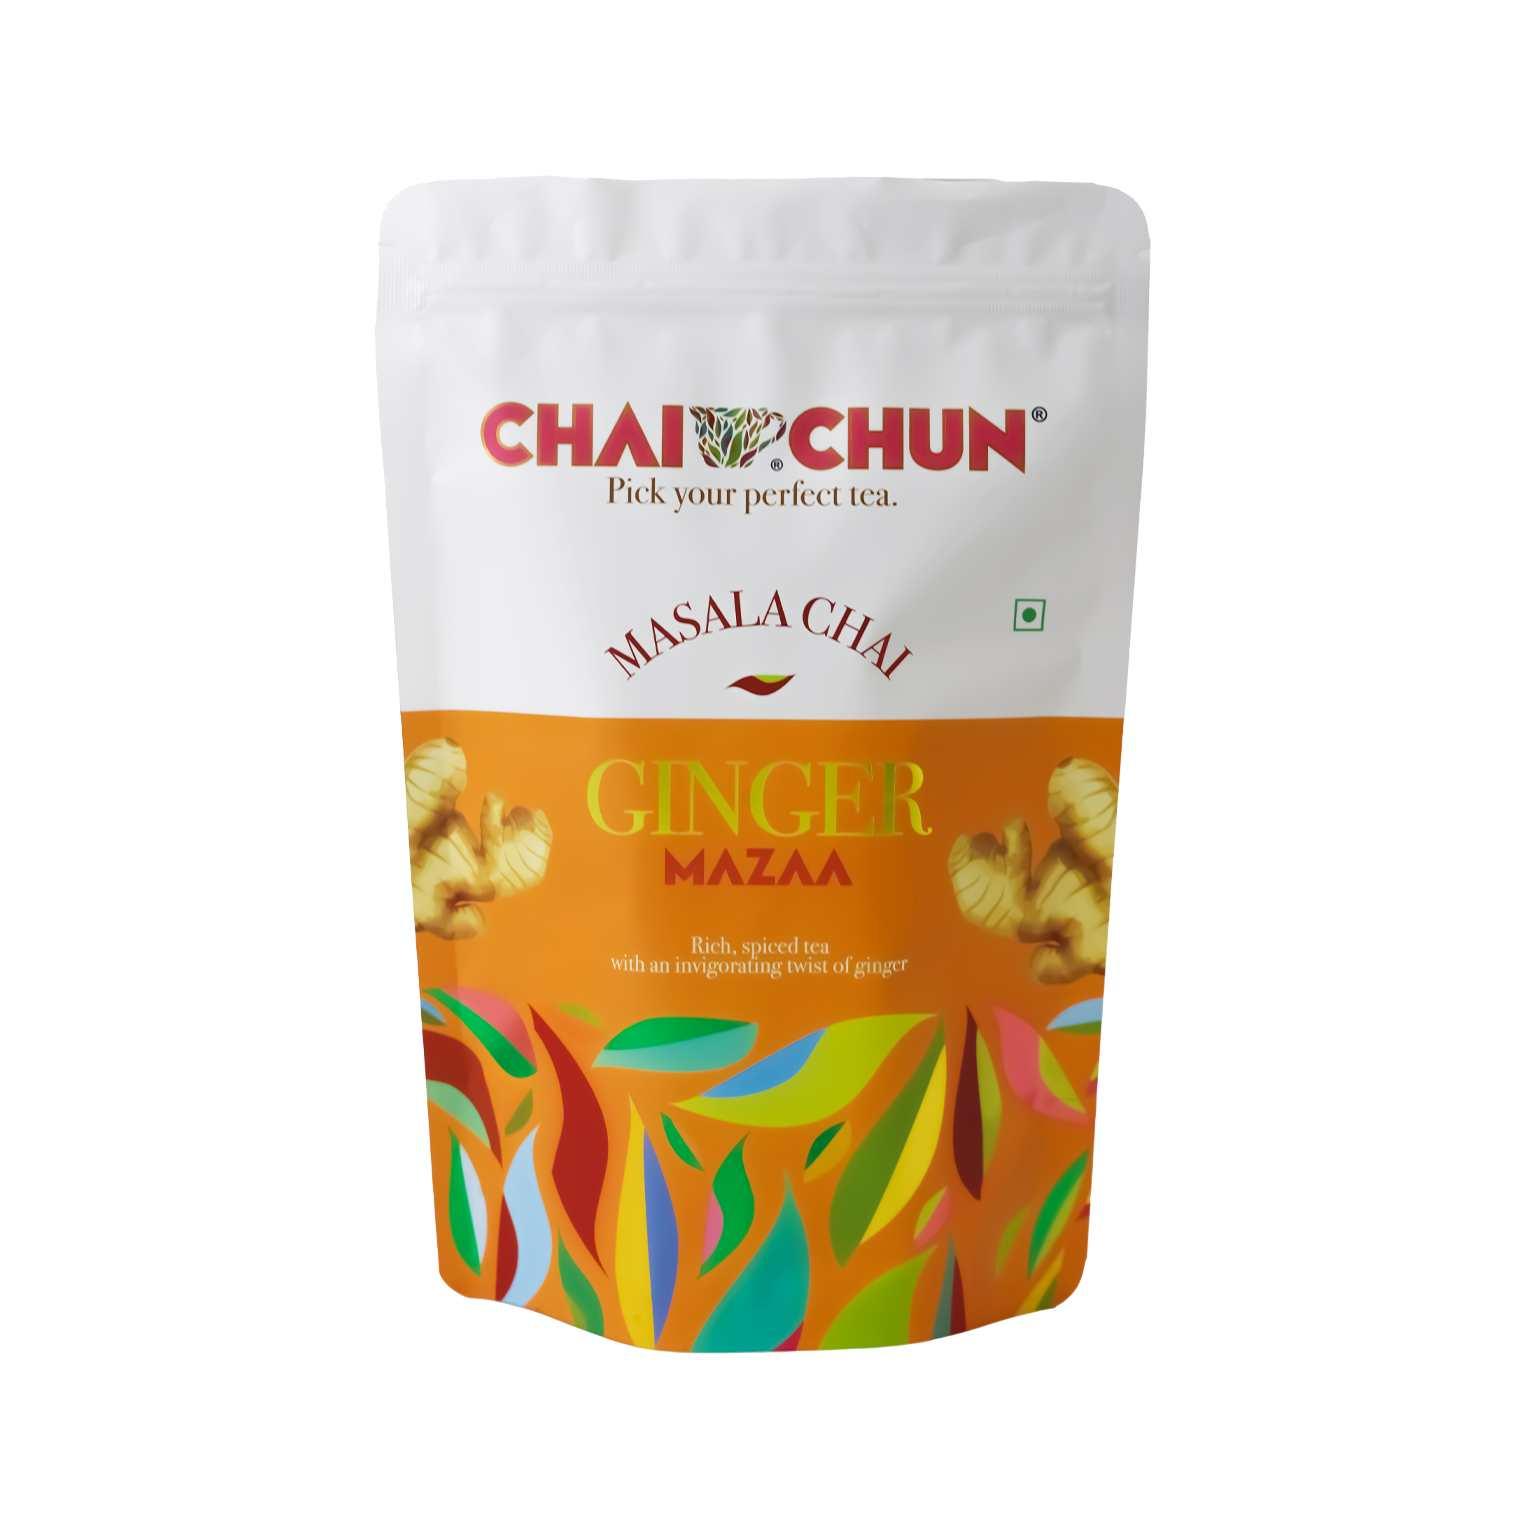 Ginger Mazaa - Chai Chun